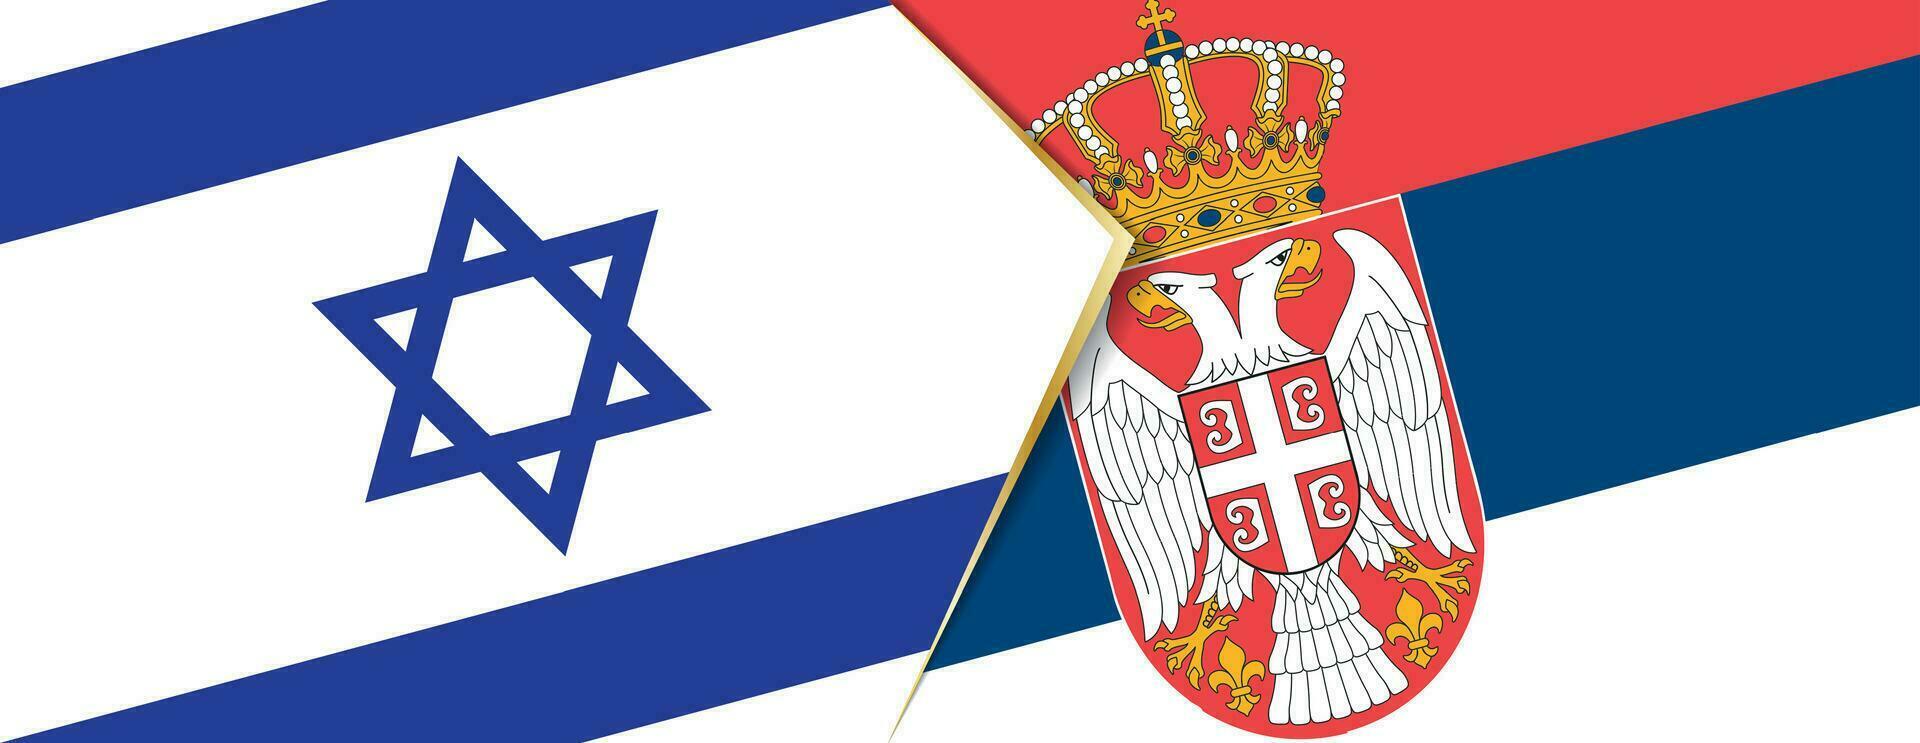 Israel och serbia flaggor, två vektor flaggor.